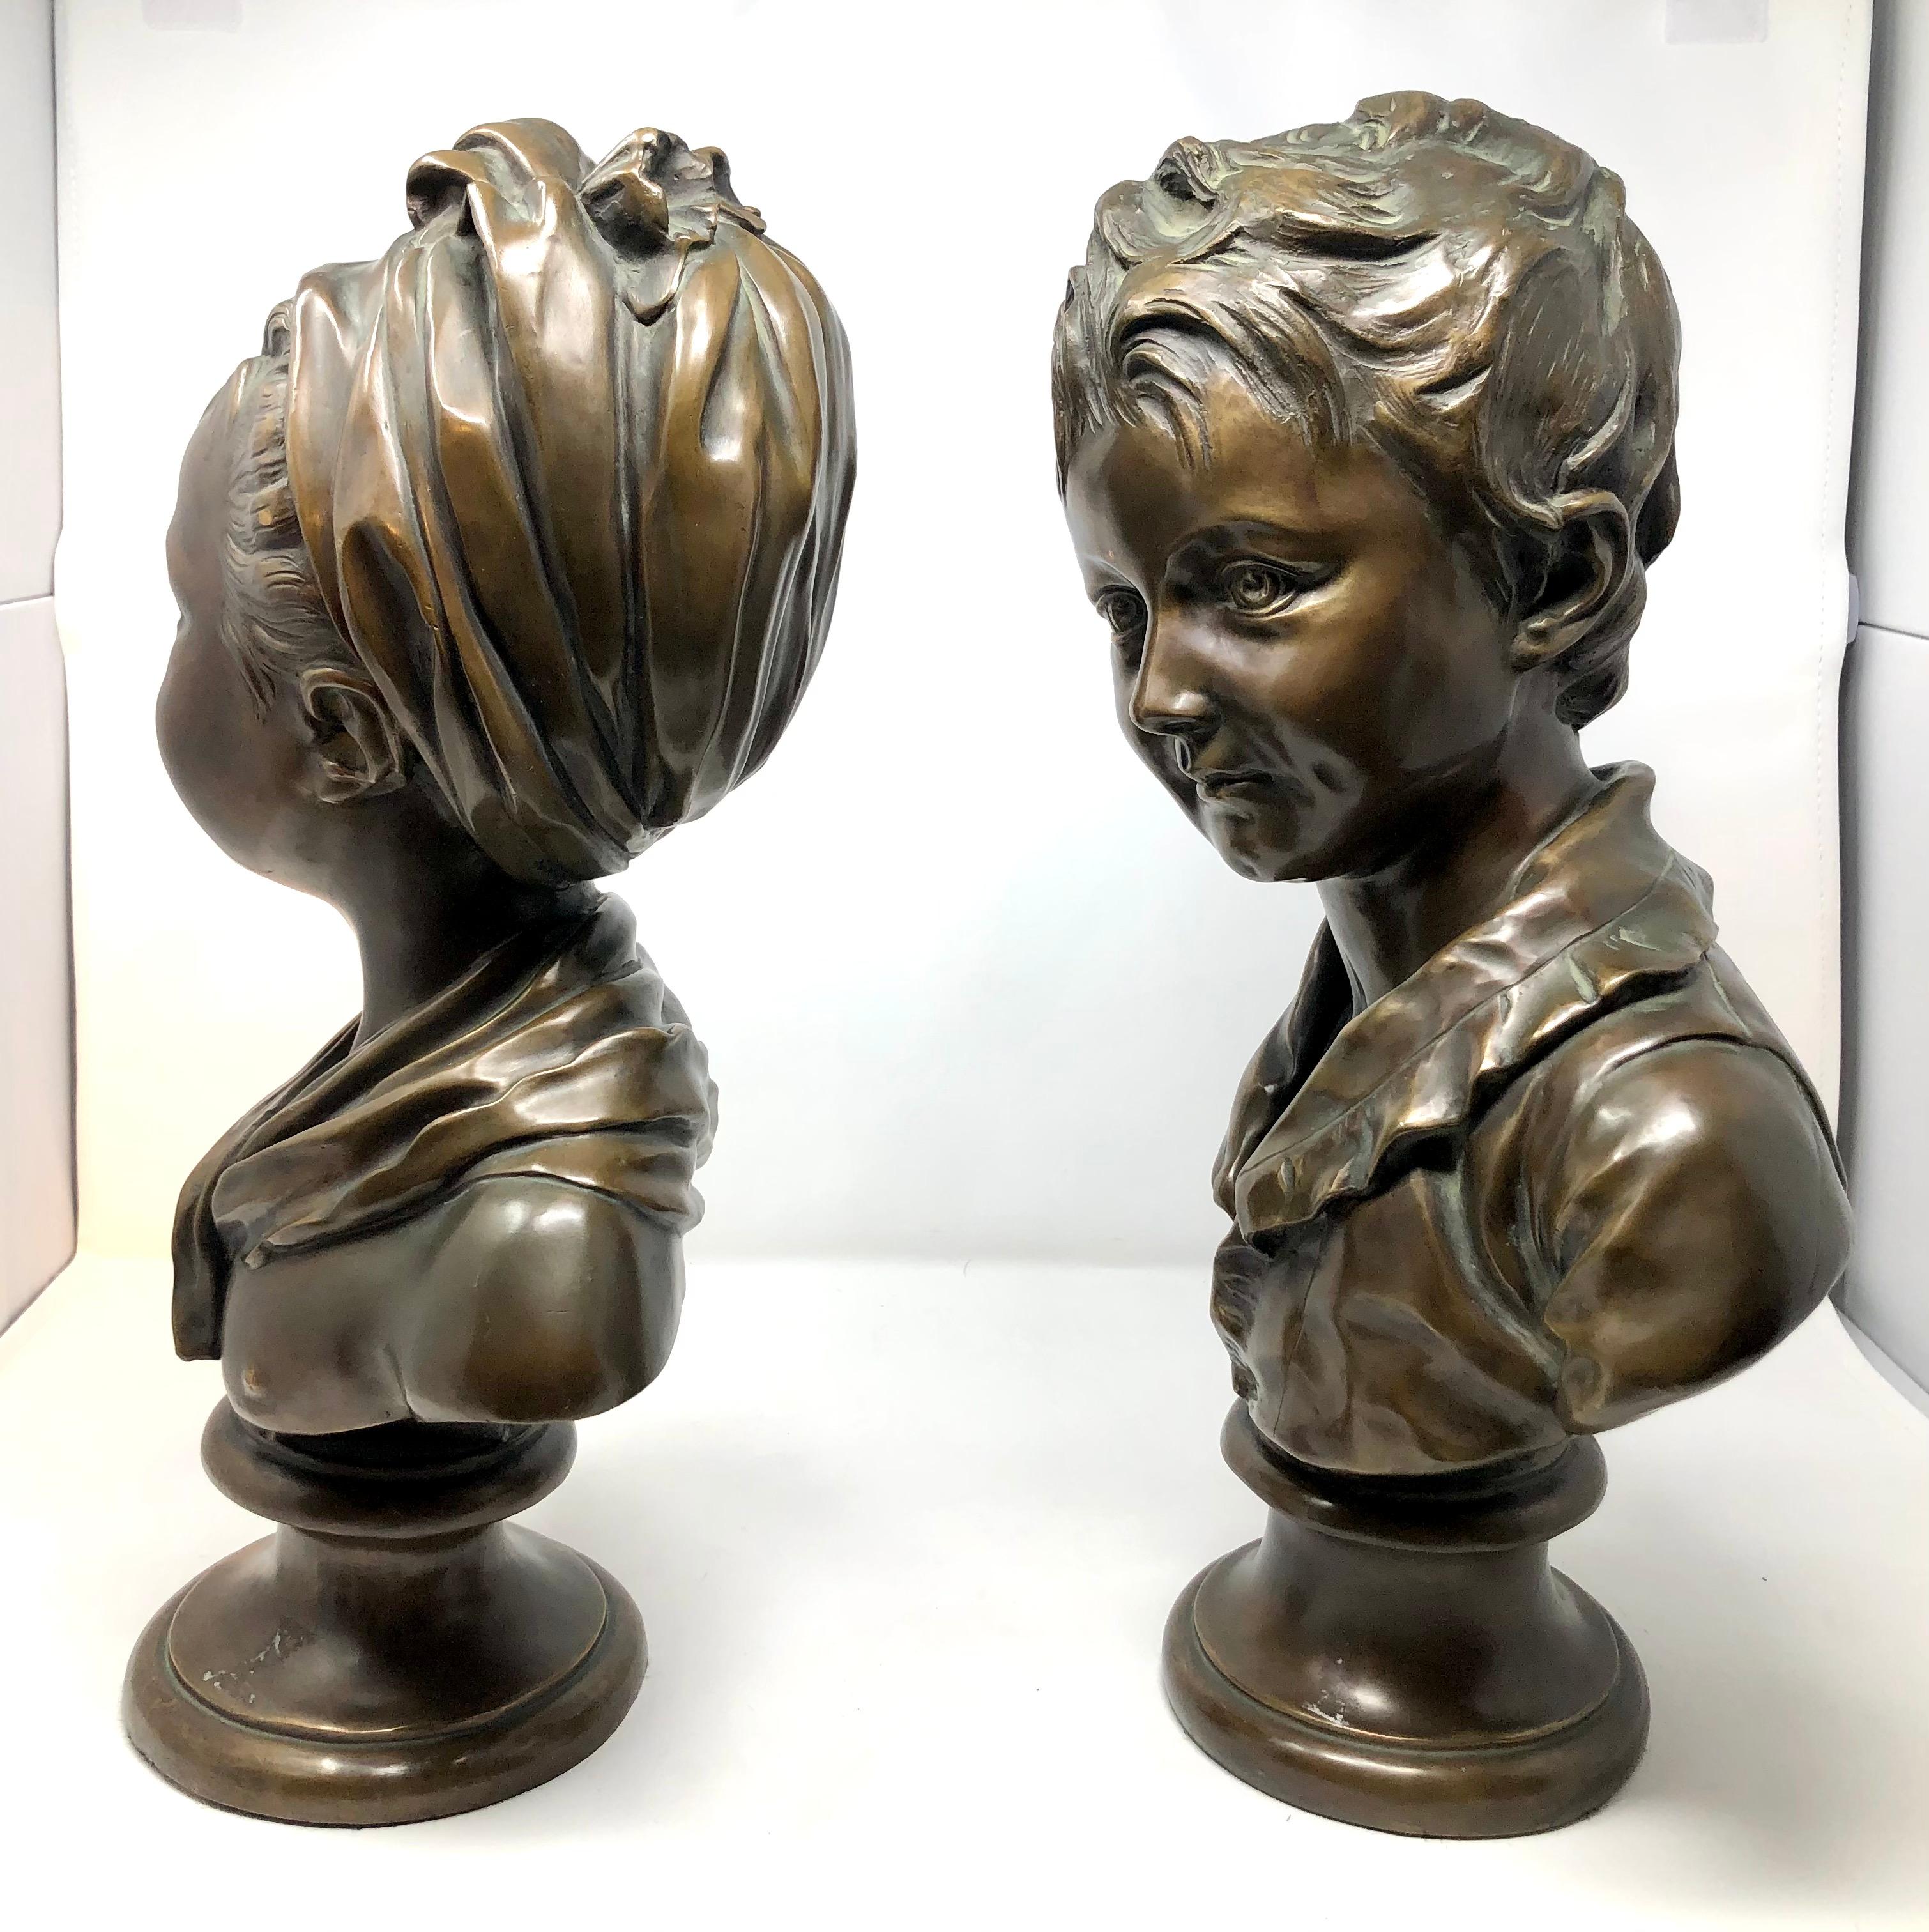 Paire de bustes d'enfants en bronze de style néo-classique français d'après Jean-Antoine Houdon.